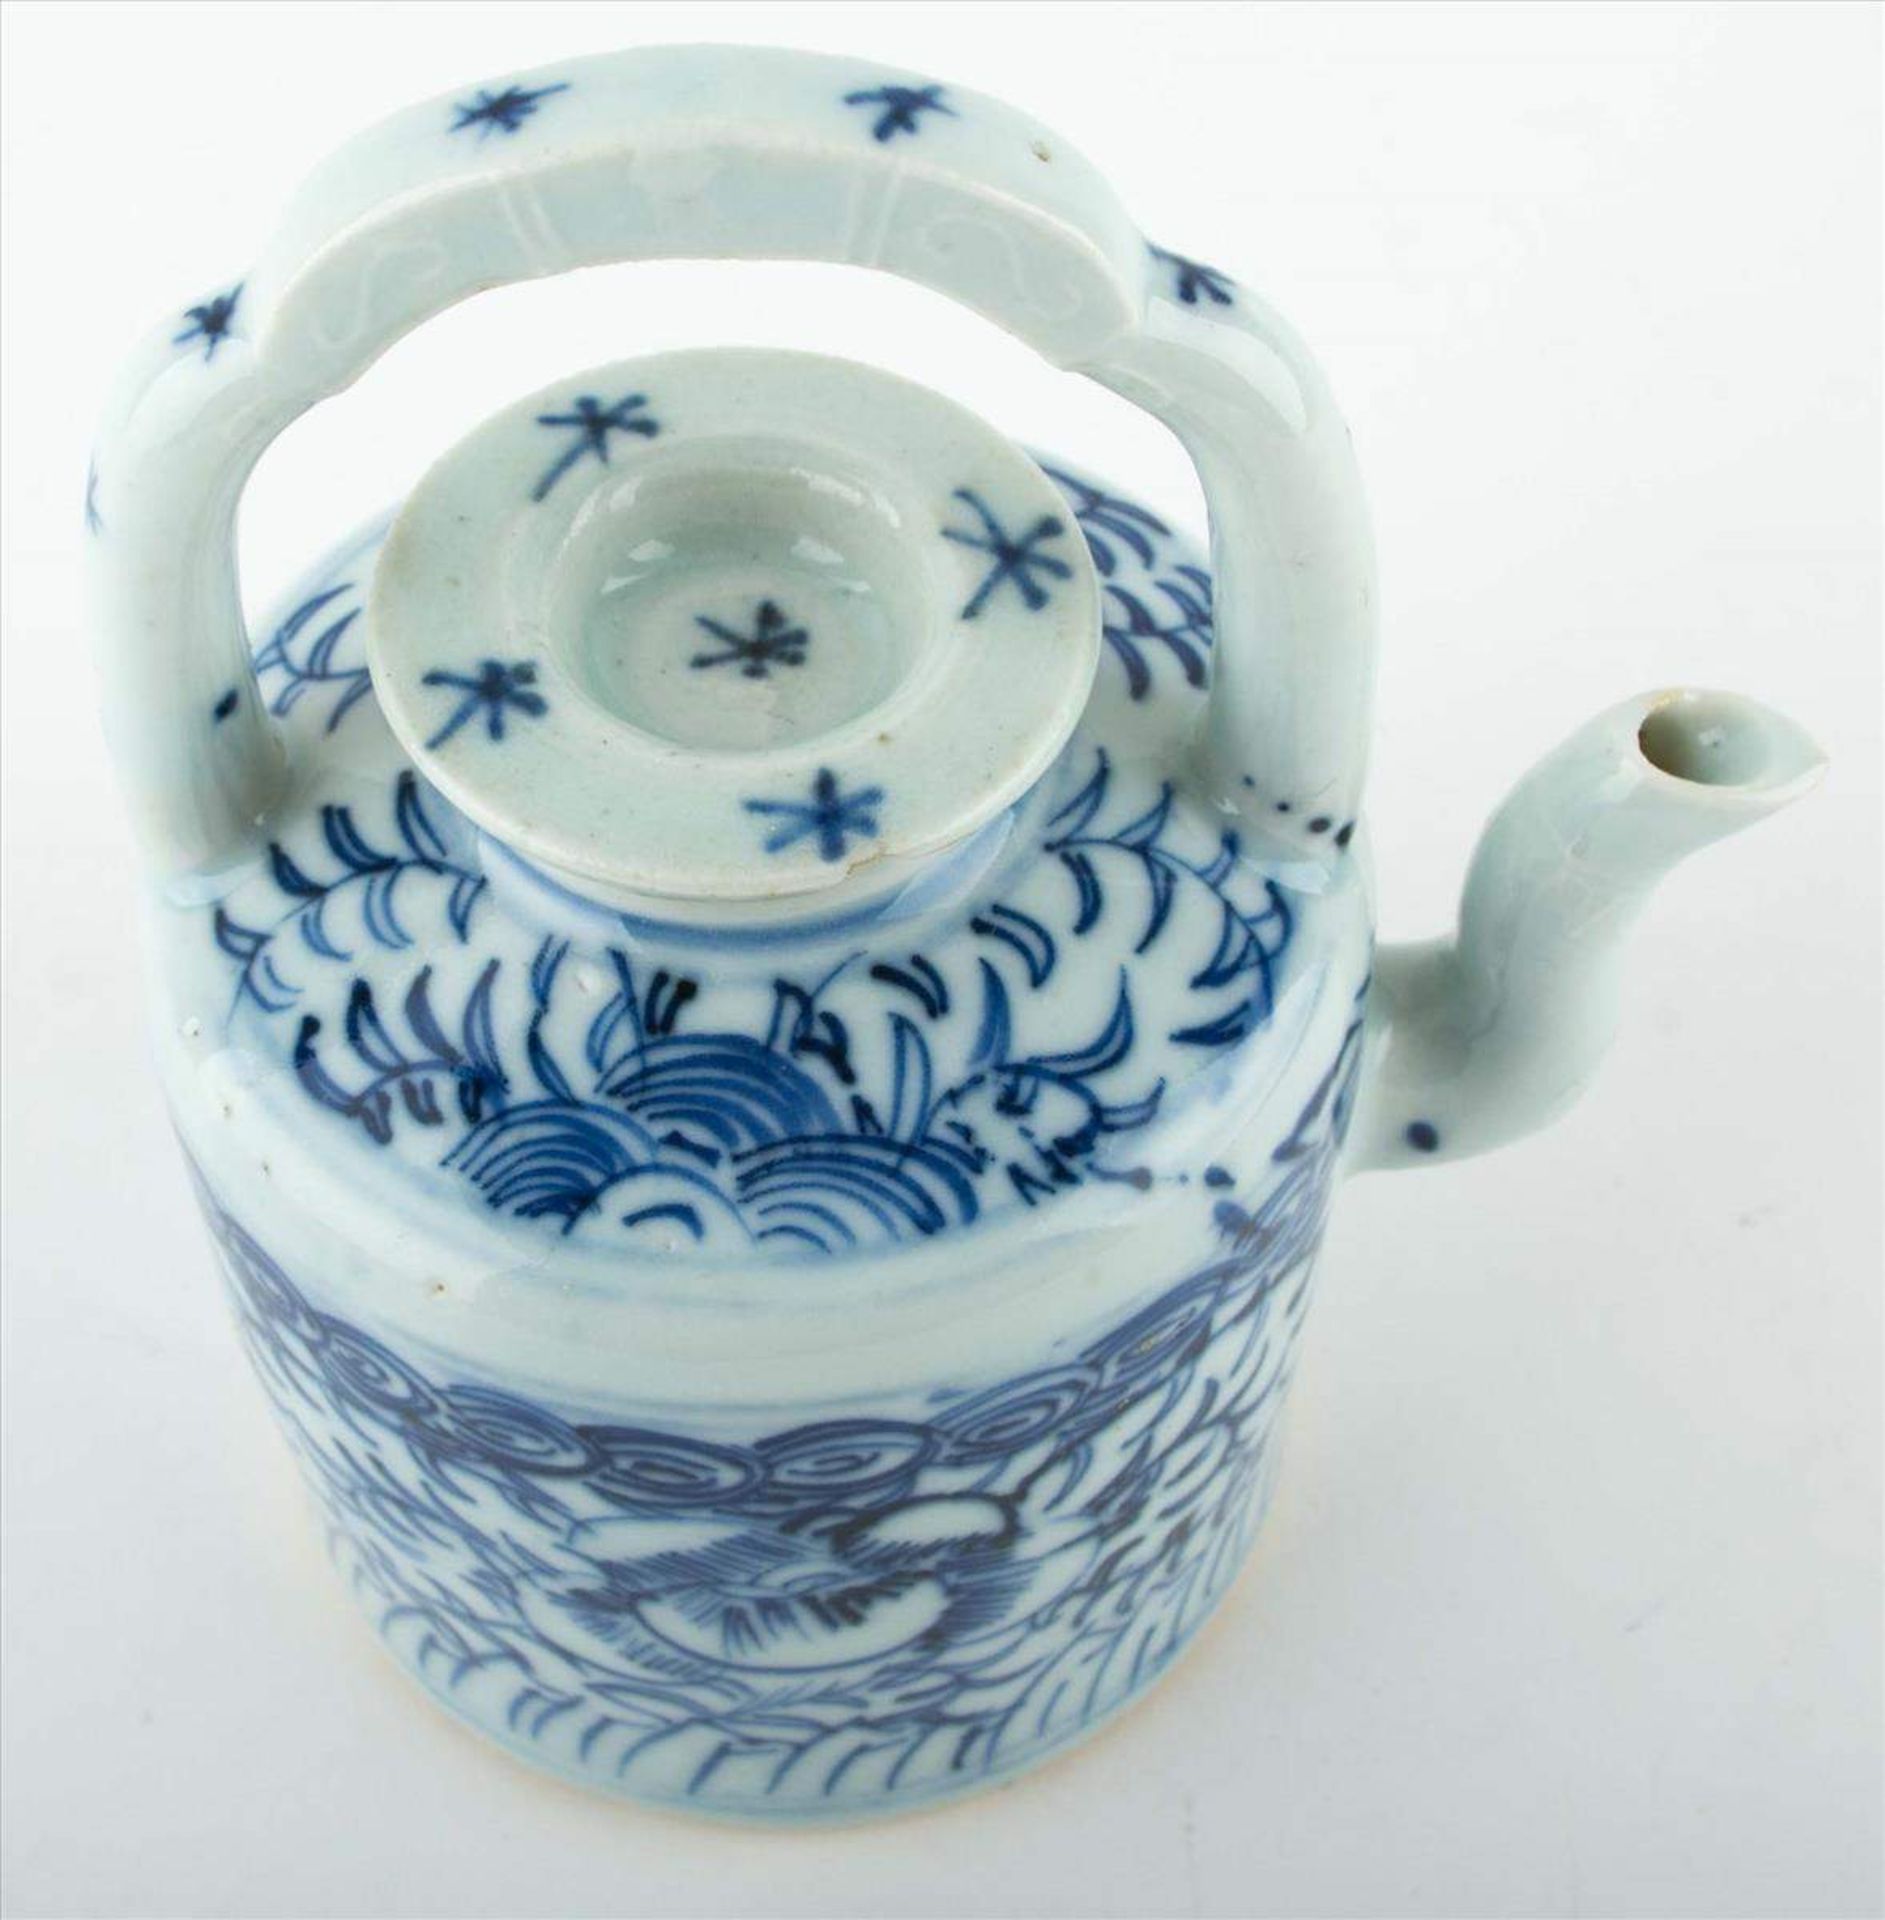 Teekanne China um 1900 / Teapot China, about 1900verziert mit floralem- und Ornamentikdekor, - Bild 2 aus 3